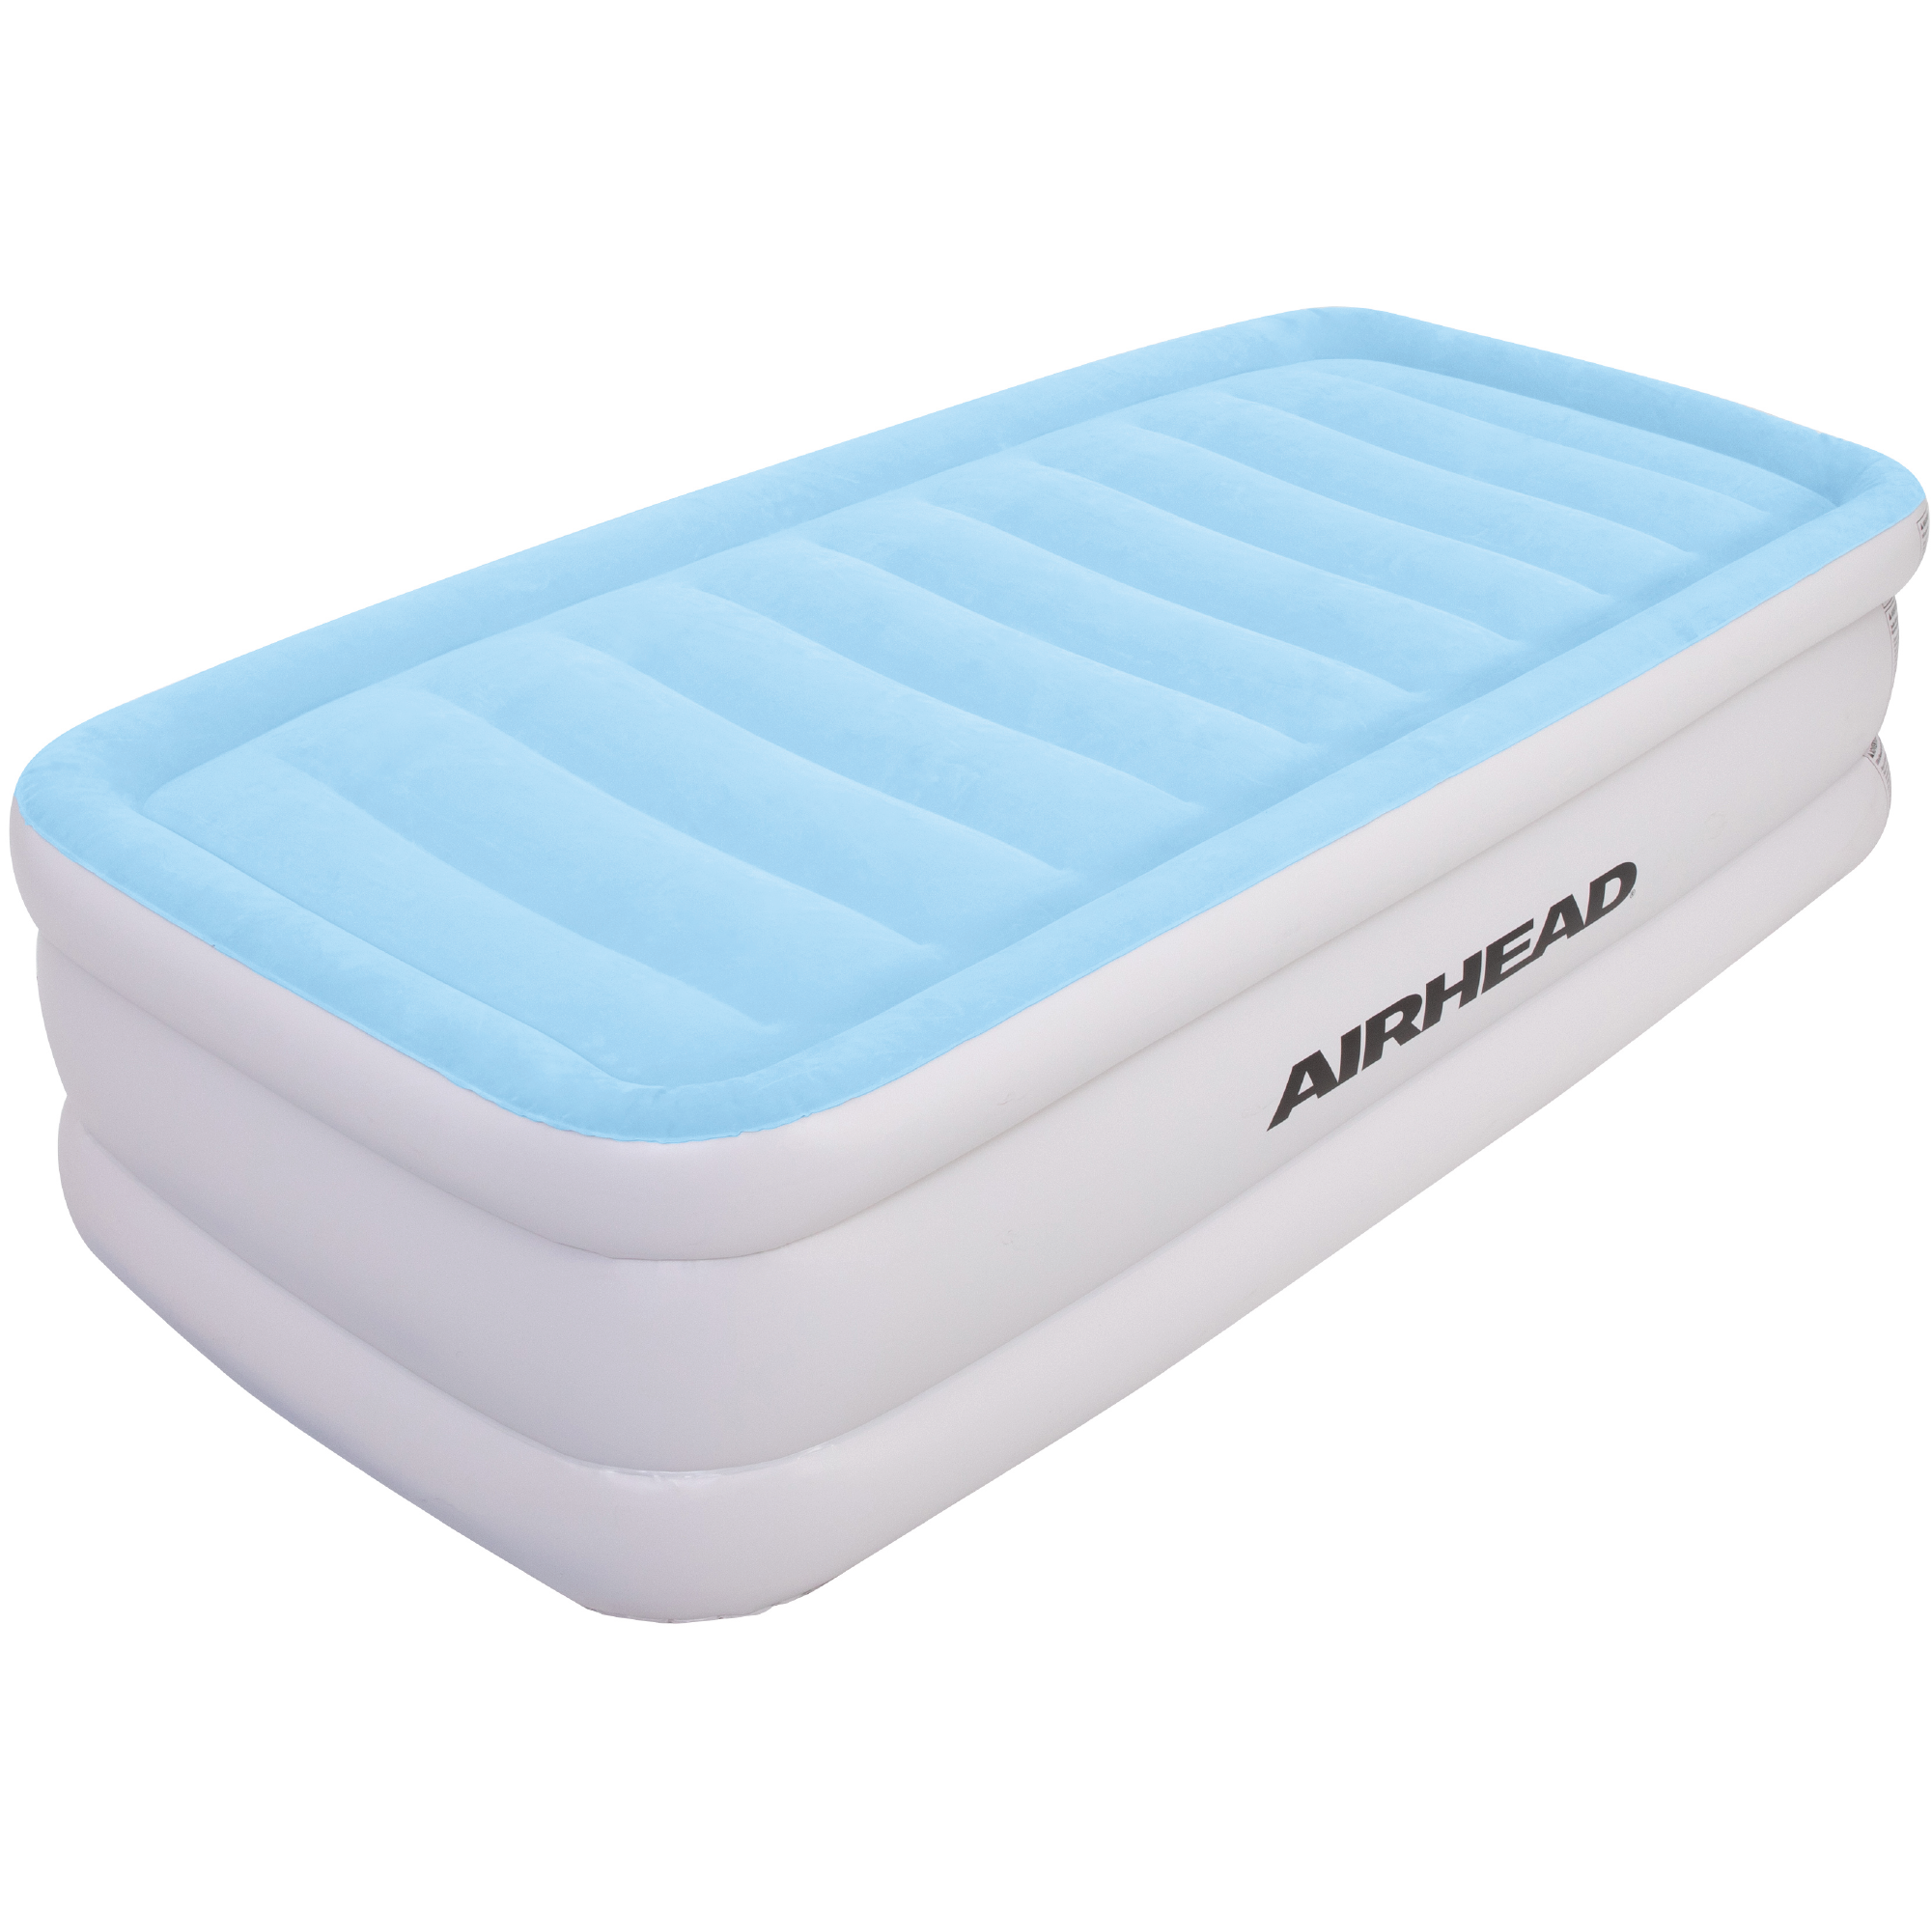 mattress topper for memory foam mattress